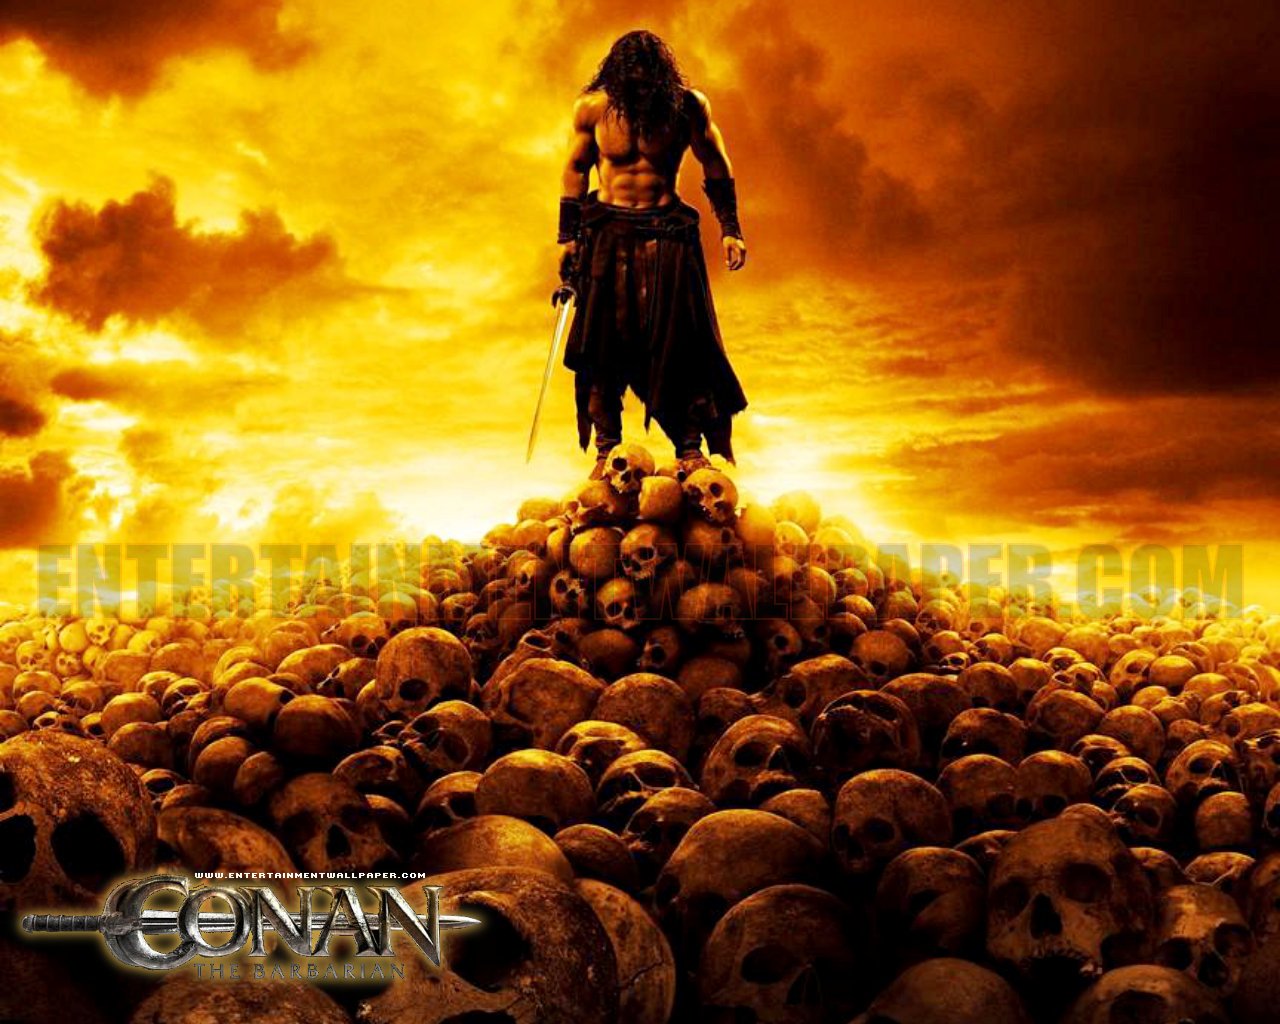 Conan The Barbarian Image HD